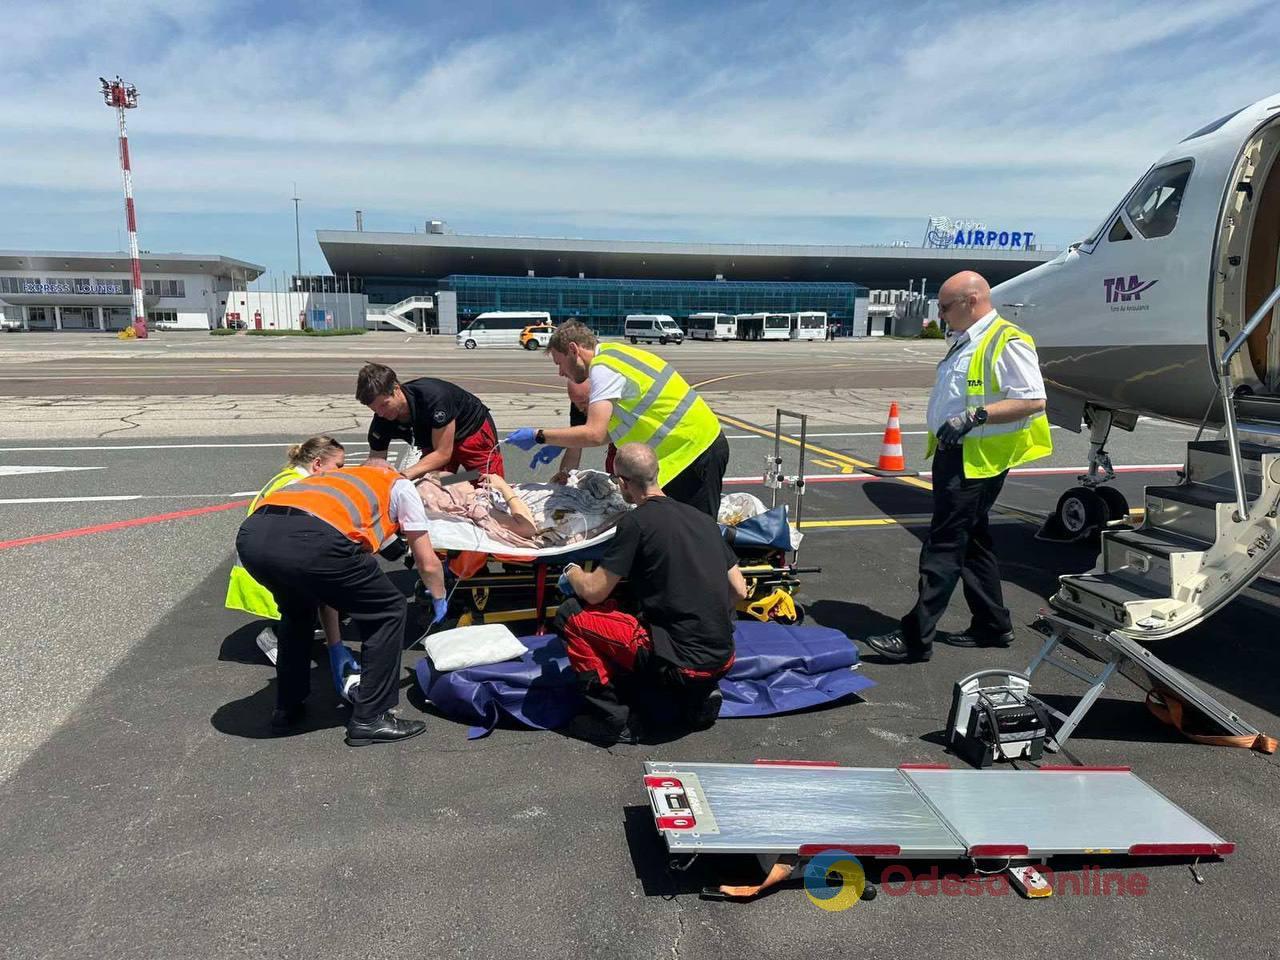 Тяжело раненую в результате российской атаки жительницу Одесской области спасательной авиацией эвакуировали в Австрию